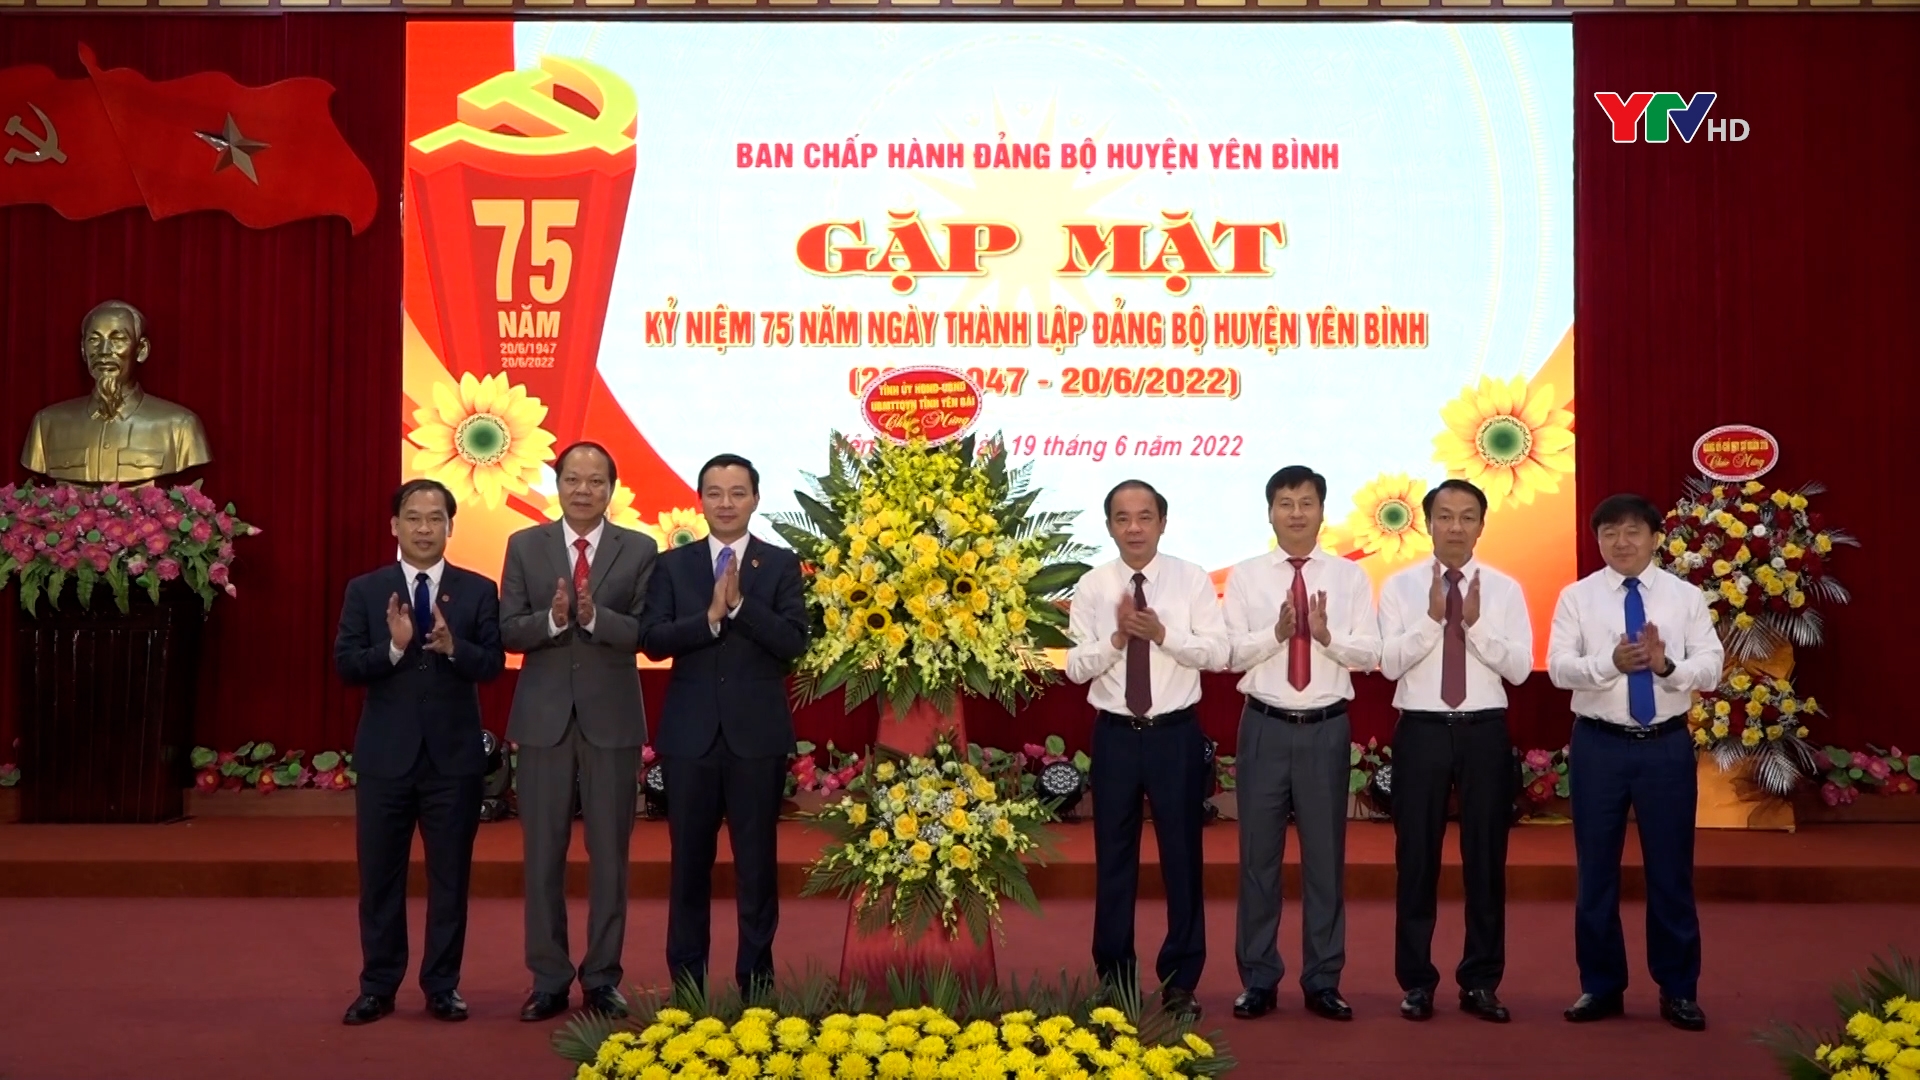 Đảng bộ huyện Yên Bình gặp mặt kỷ niệm 75 năm ngày thành lập